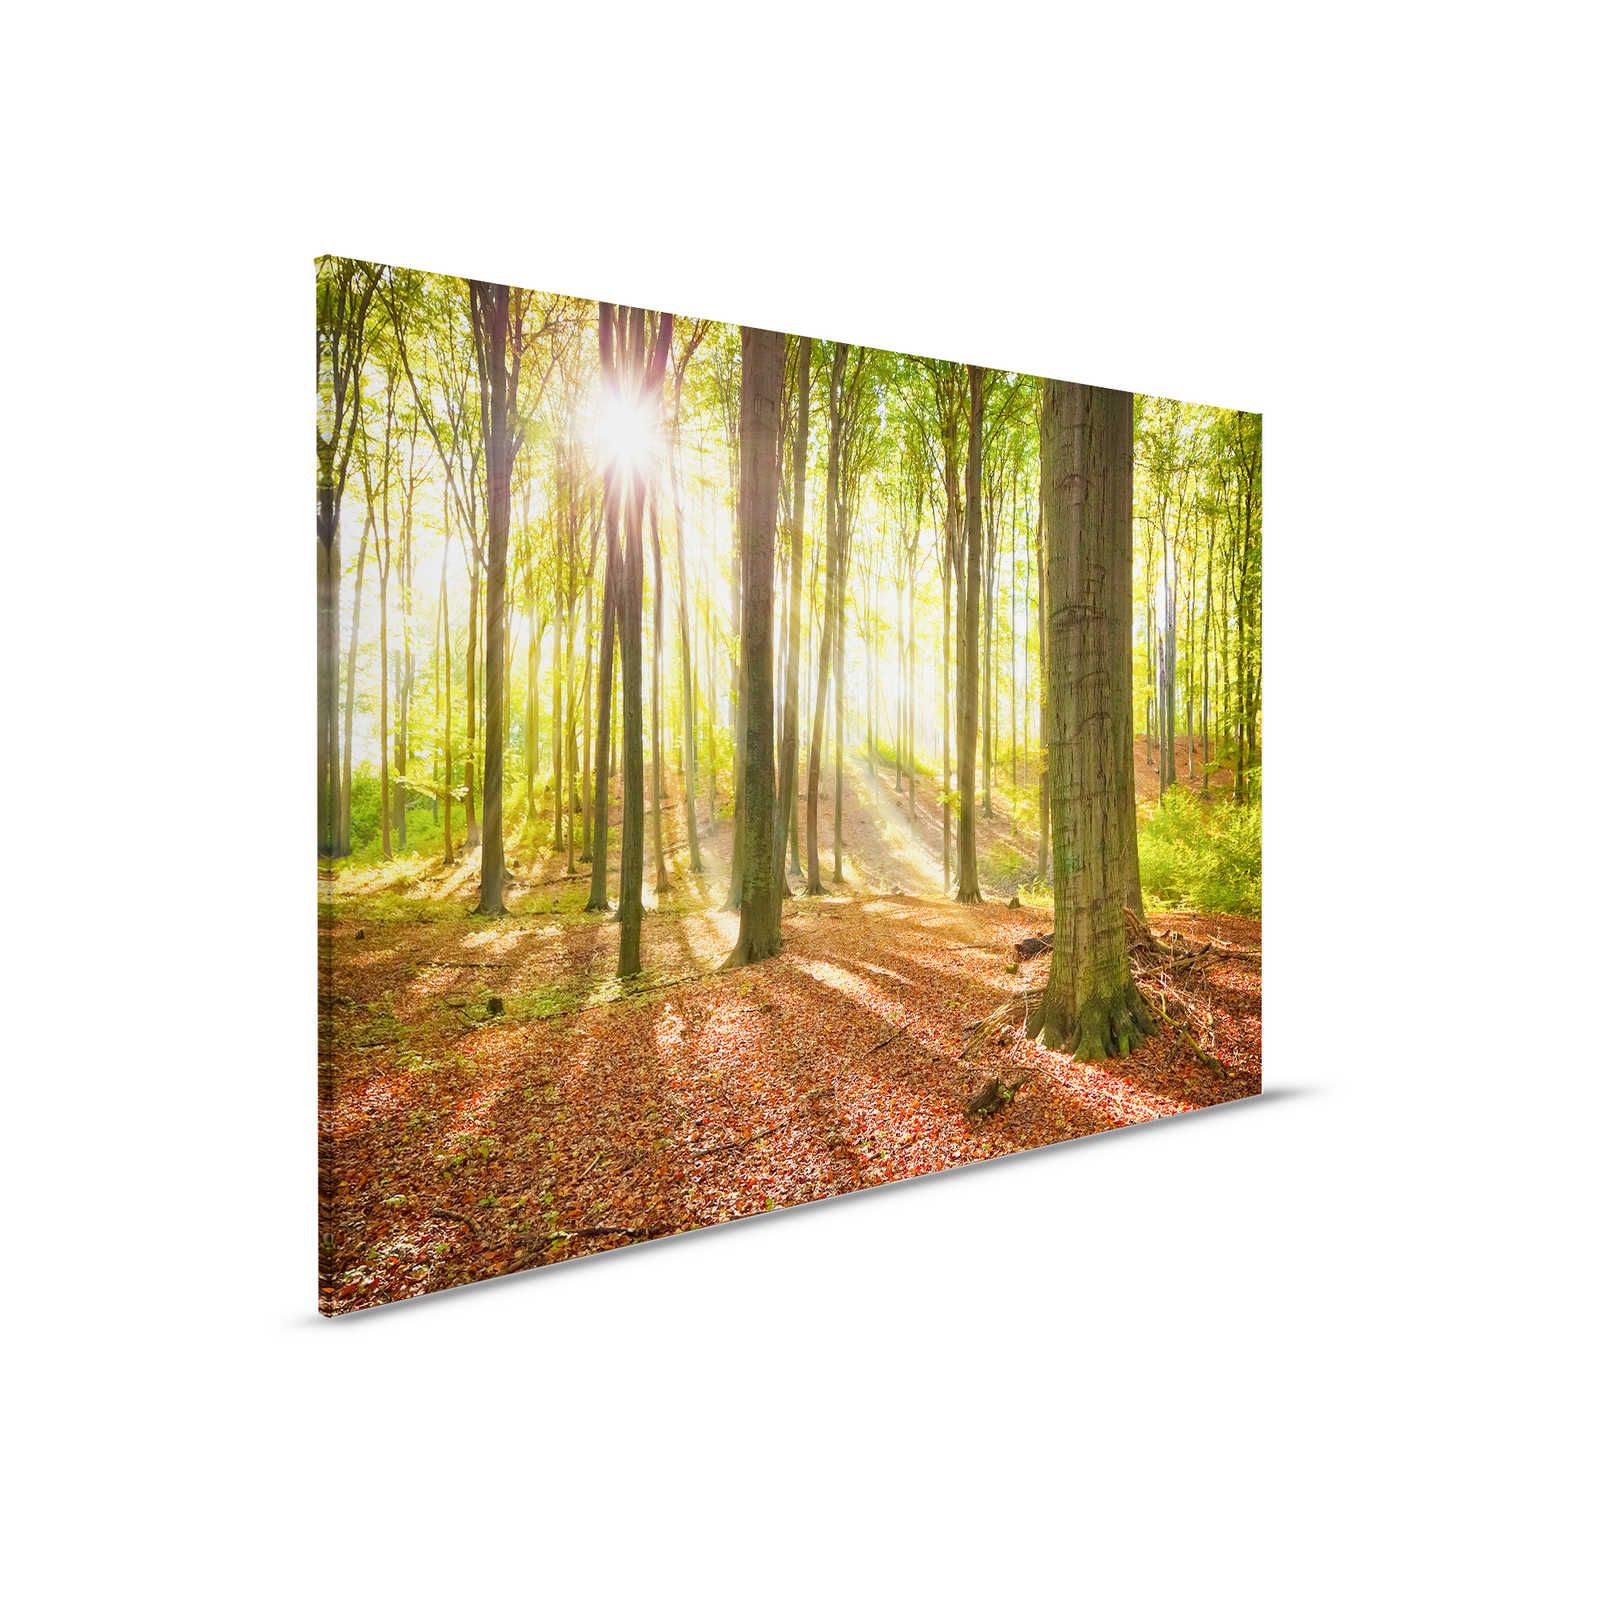 Deciduous Forest Canvas Painting Morning Landscape - 0.90 m x 0.60 m
